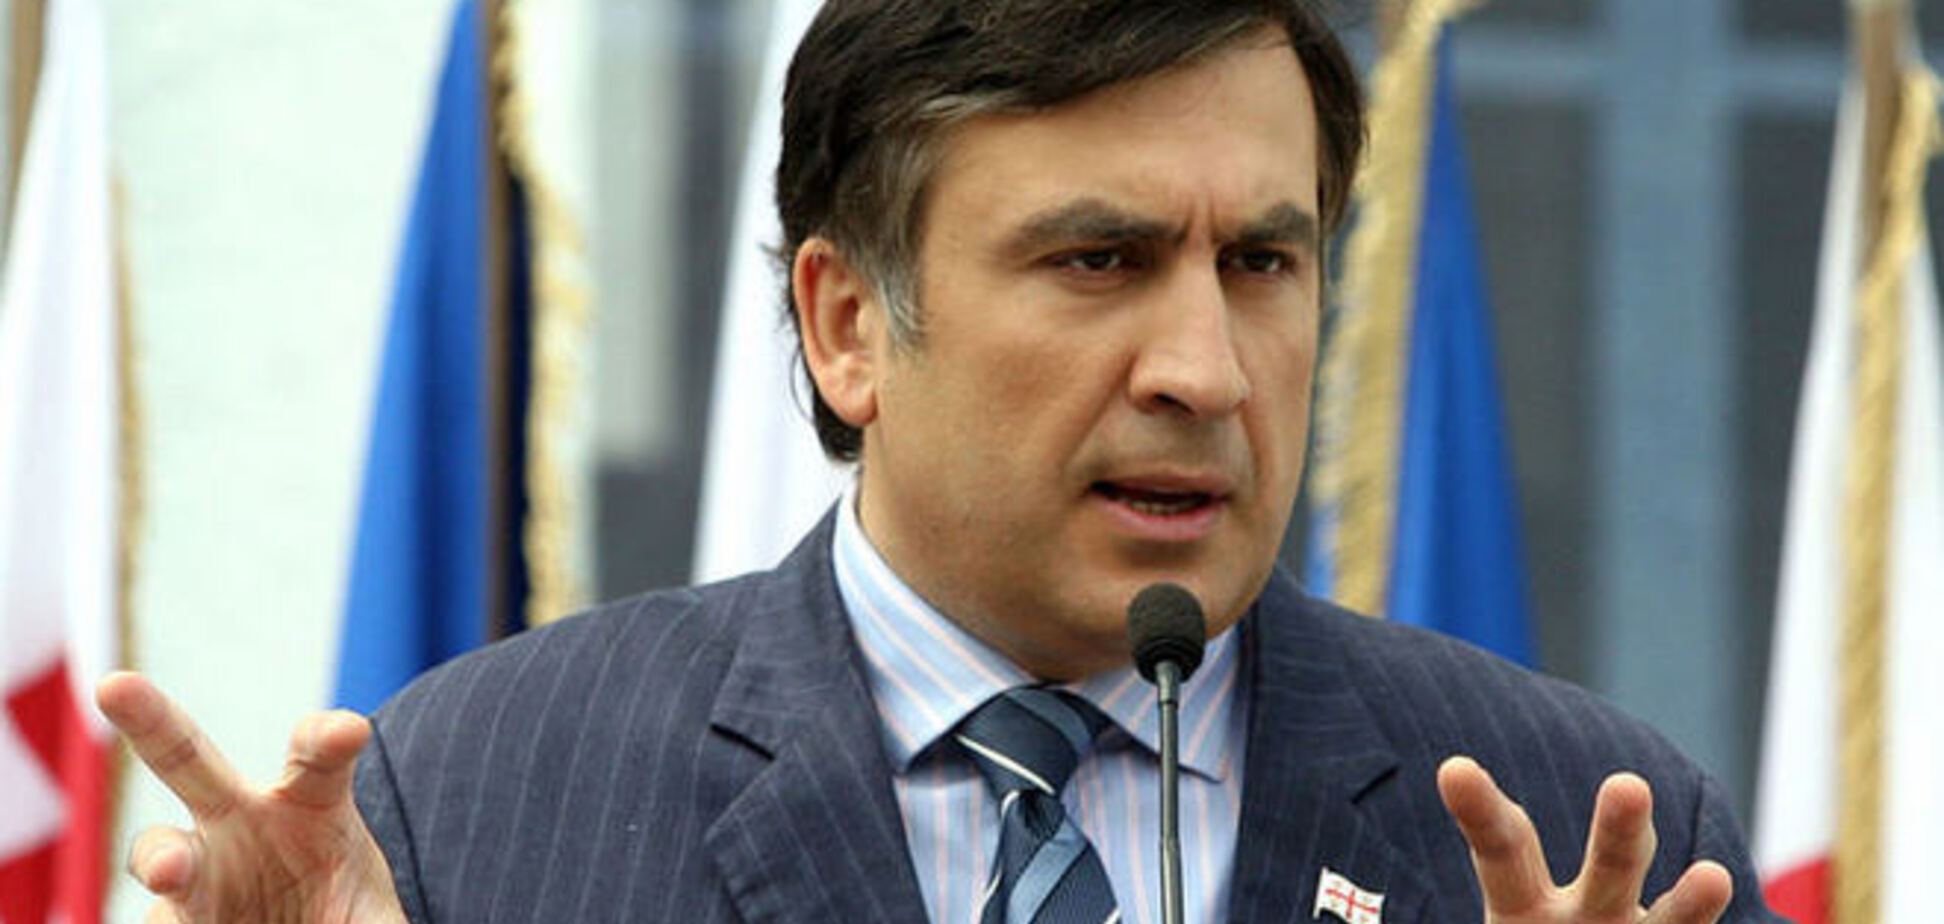 Порошенко нужно срочно решить вопрос востока Украины, пока Путин не обнес его колючей проволокой – Саакашвили